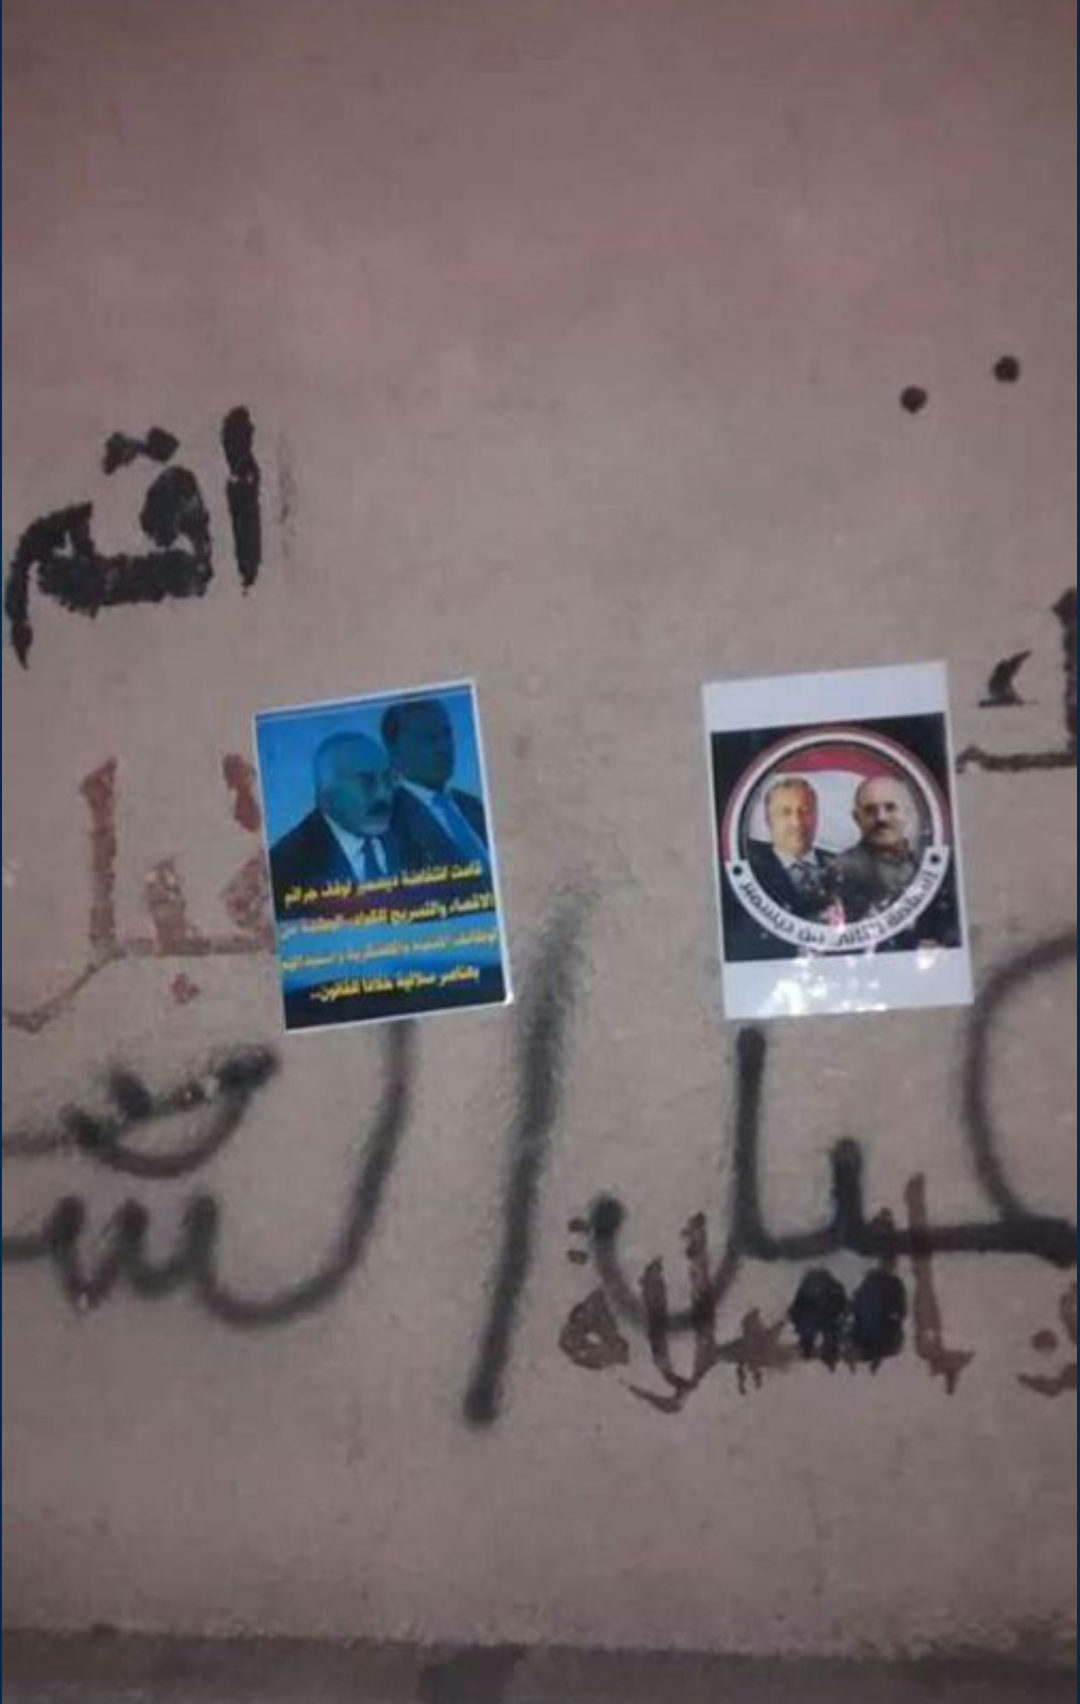 صور:ل عارف الزوكا وعلي عبدالله صالح...تنتشر في شوارع صنعاء..والميليشيات تتفاجئ